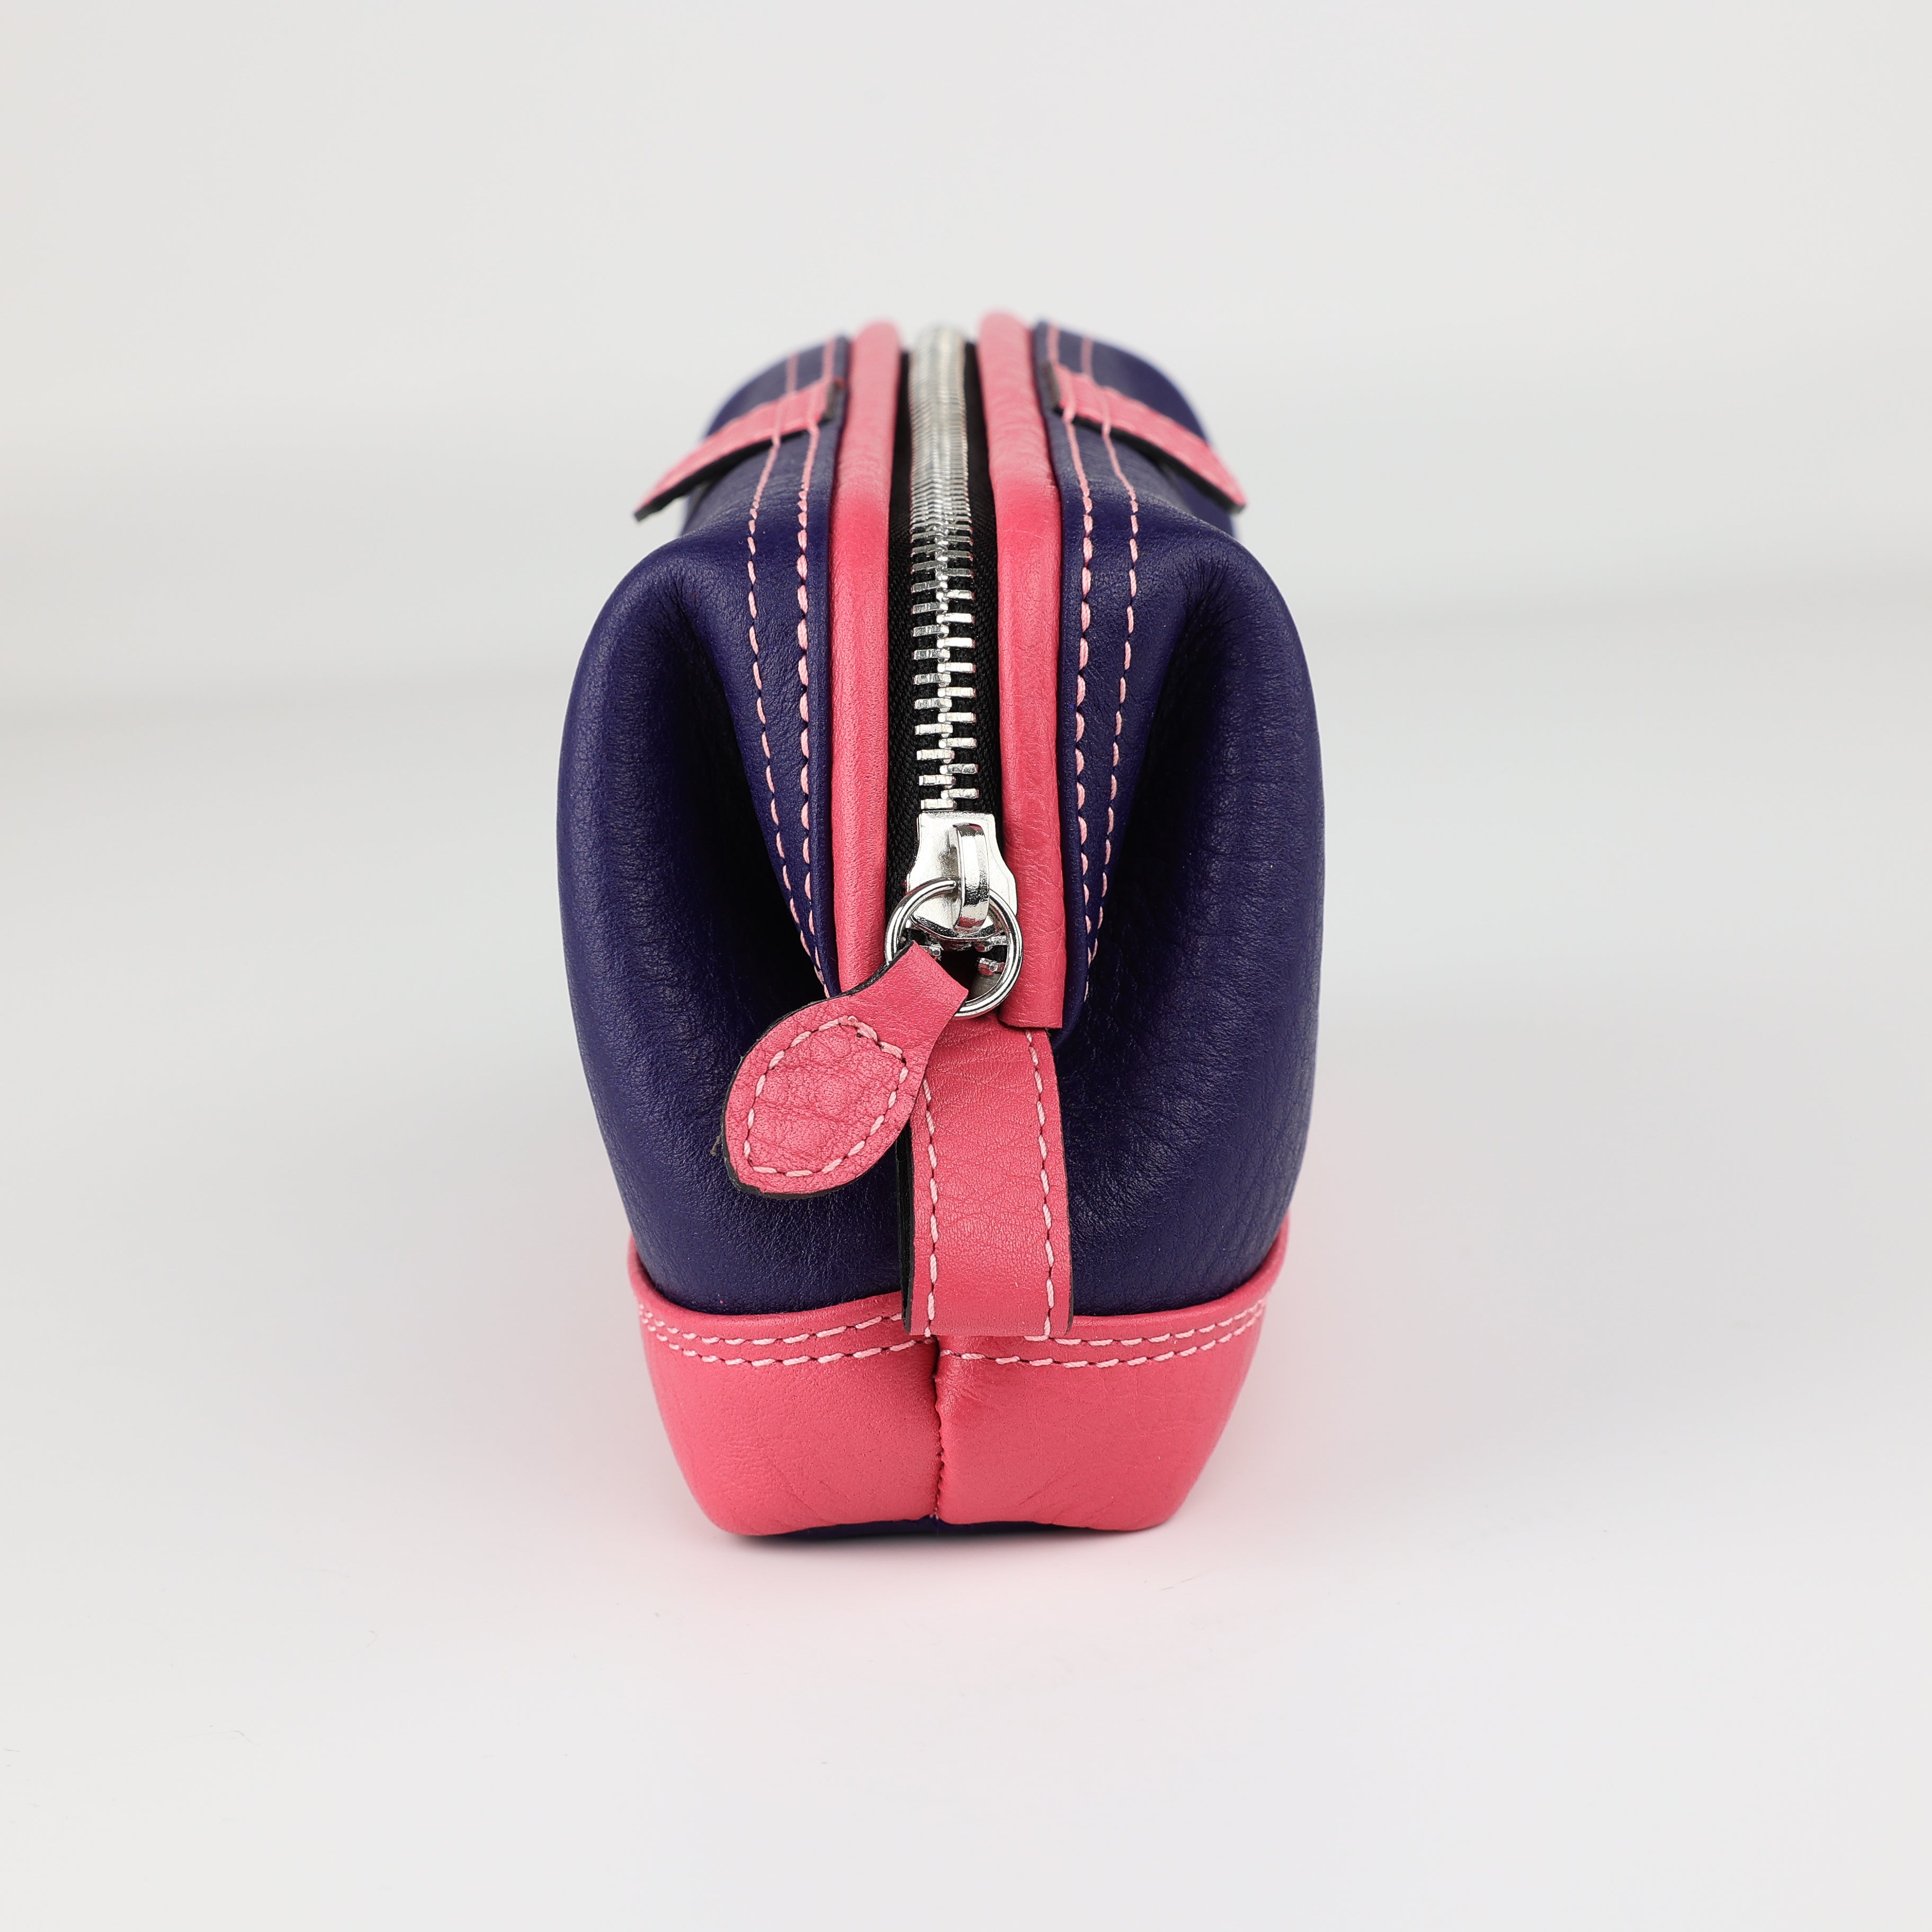 Cometic bag Mousetrap (S) - violet/pink